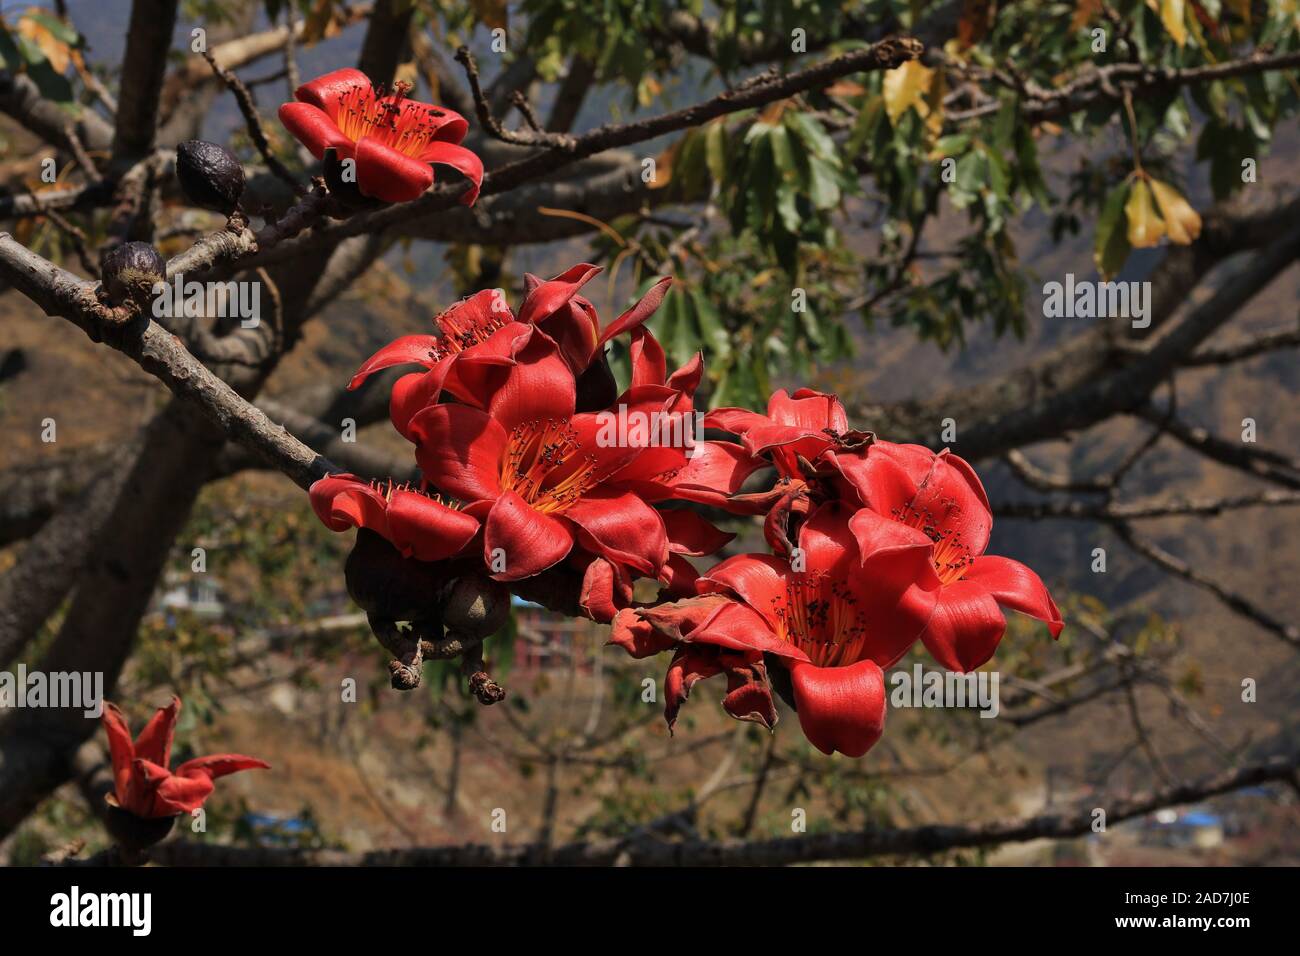 Branche d'un arbre en fleurs de coton rouge, bombax ceiba. Banque D'Images